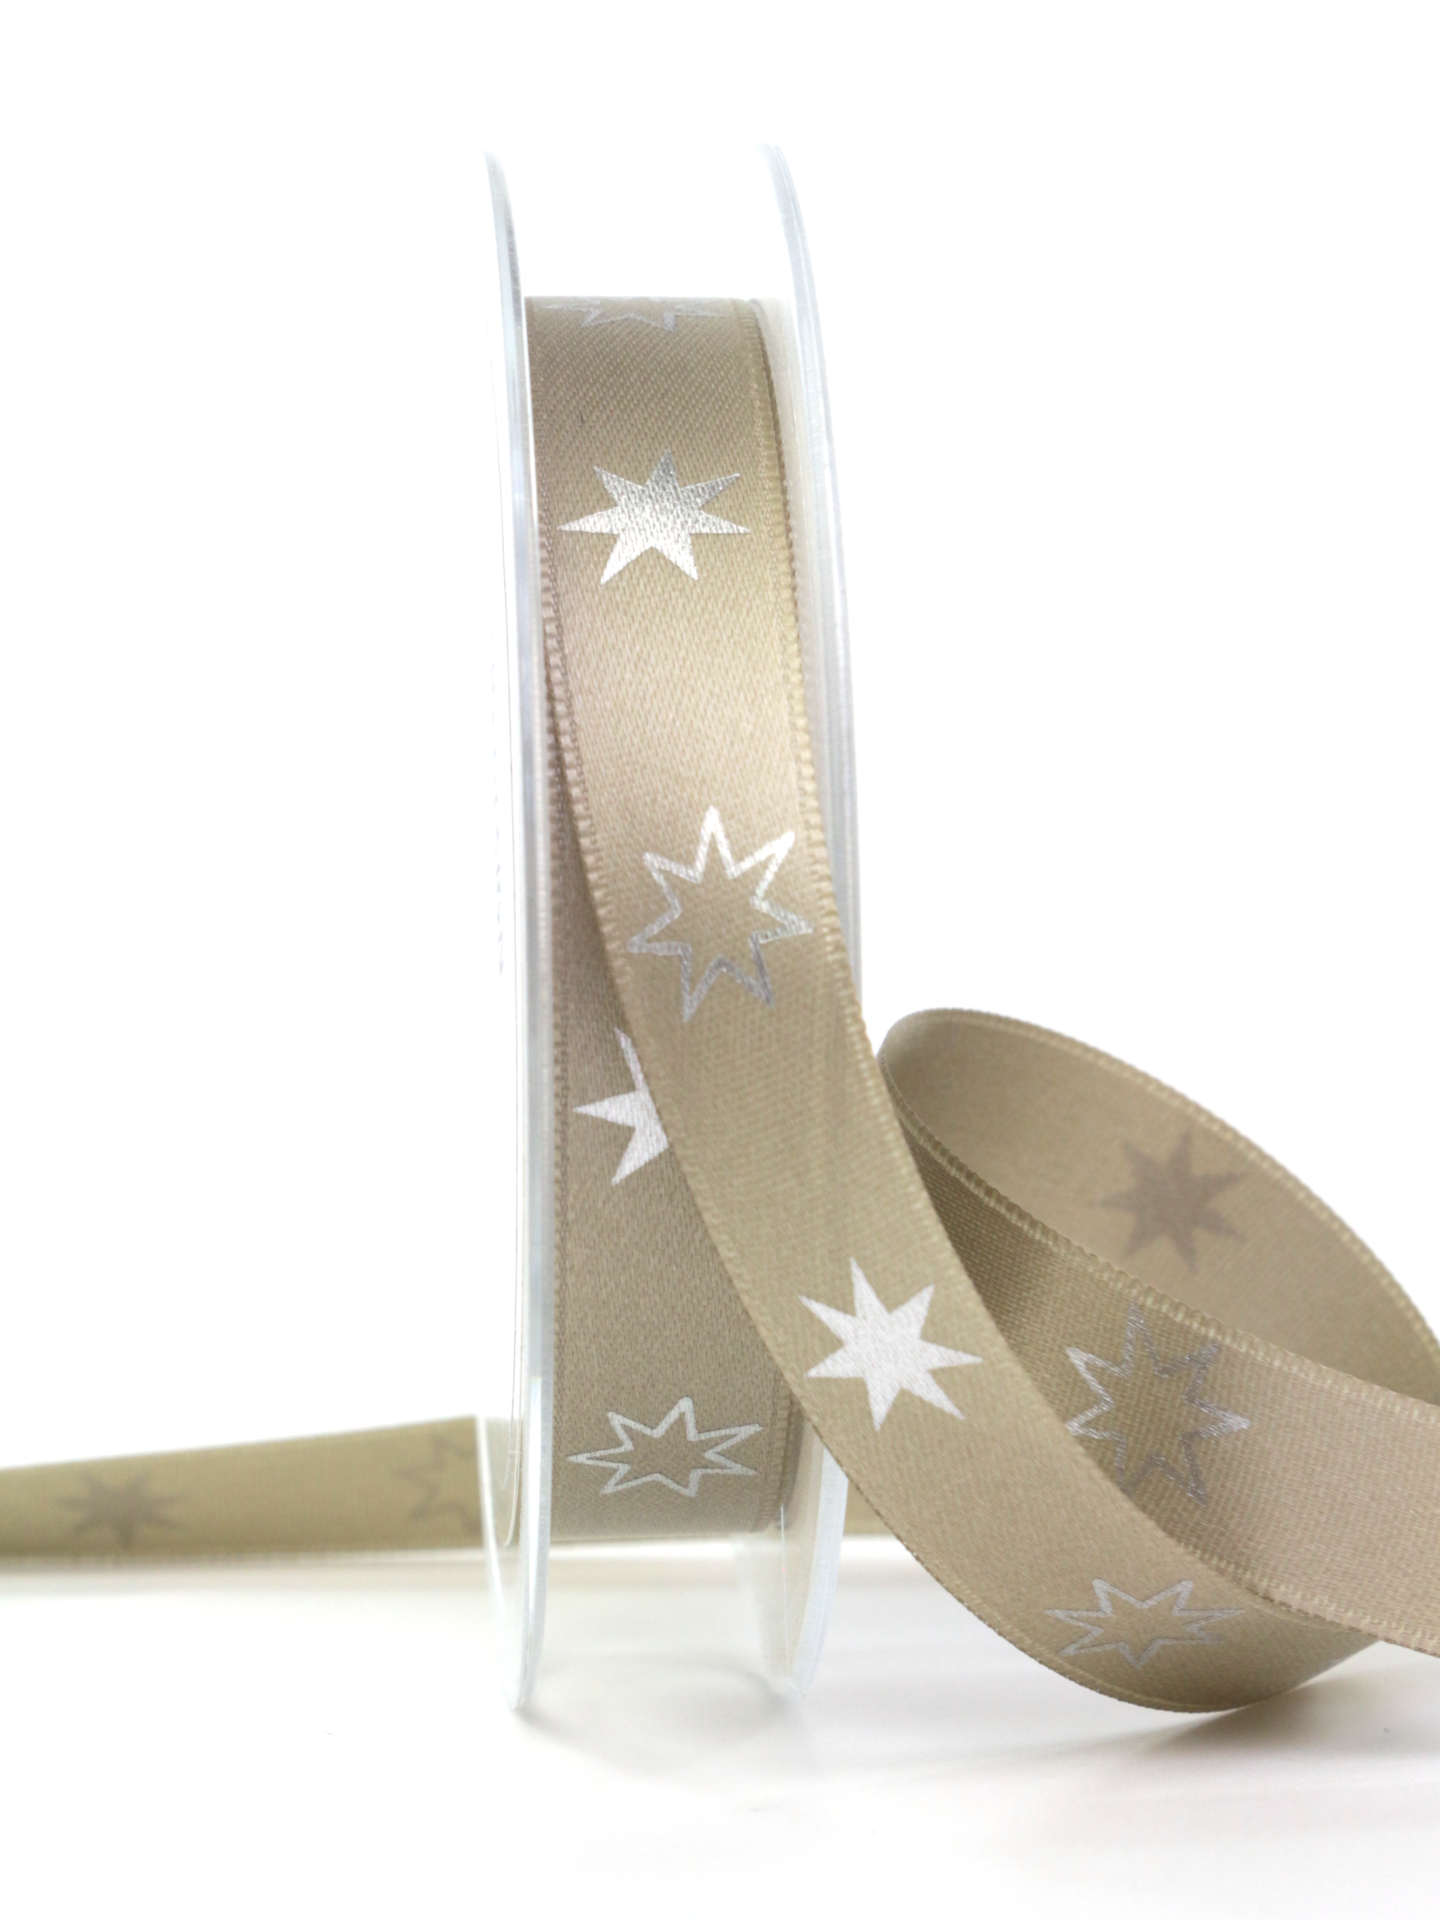 Satinband mit Sternen, taupe, 15 mm breit - geschenkband-weihnachten-gemustert, geschenkband-weihnachten, weihnachtsband